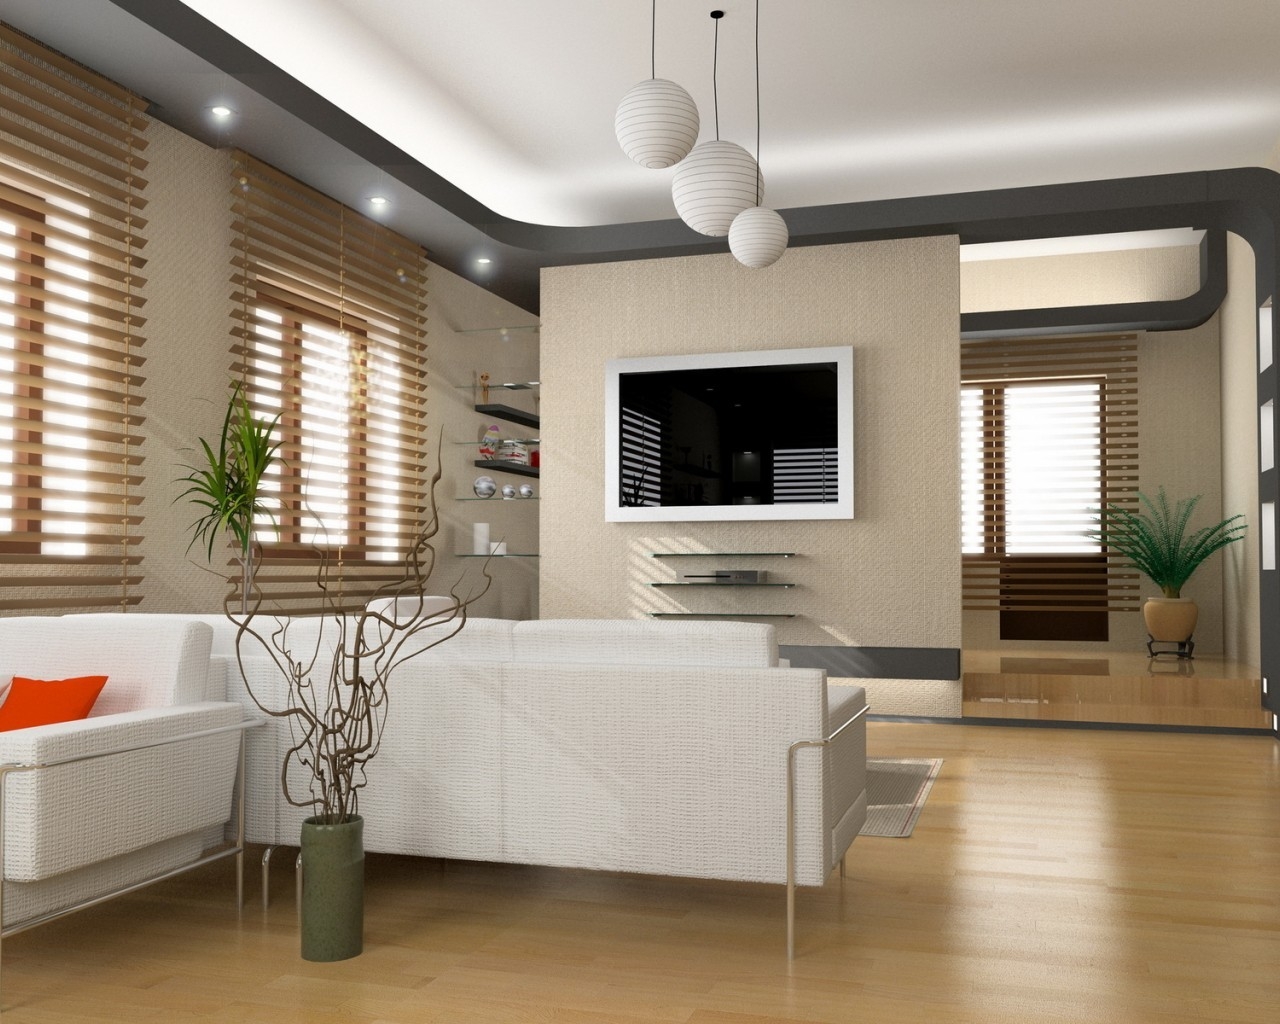 Superb Living Room Design for 1280 x 1024 resolution